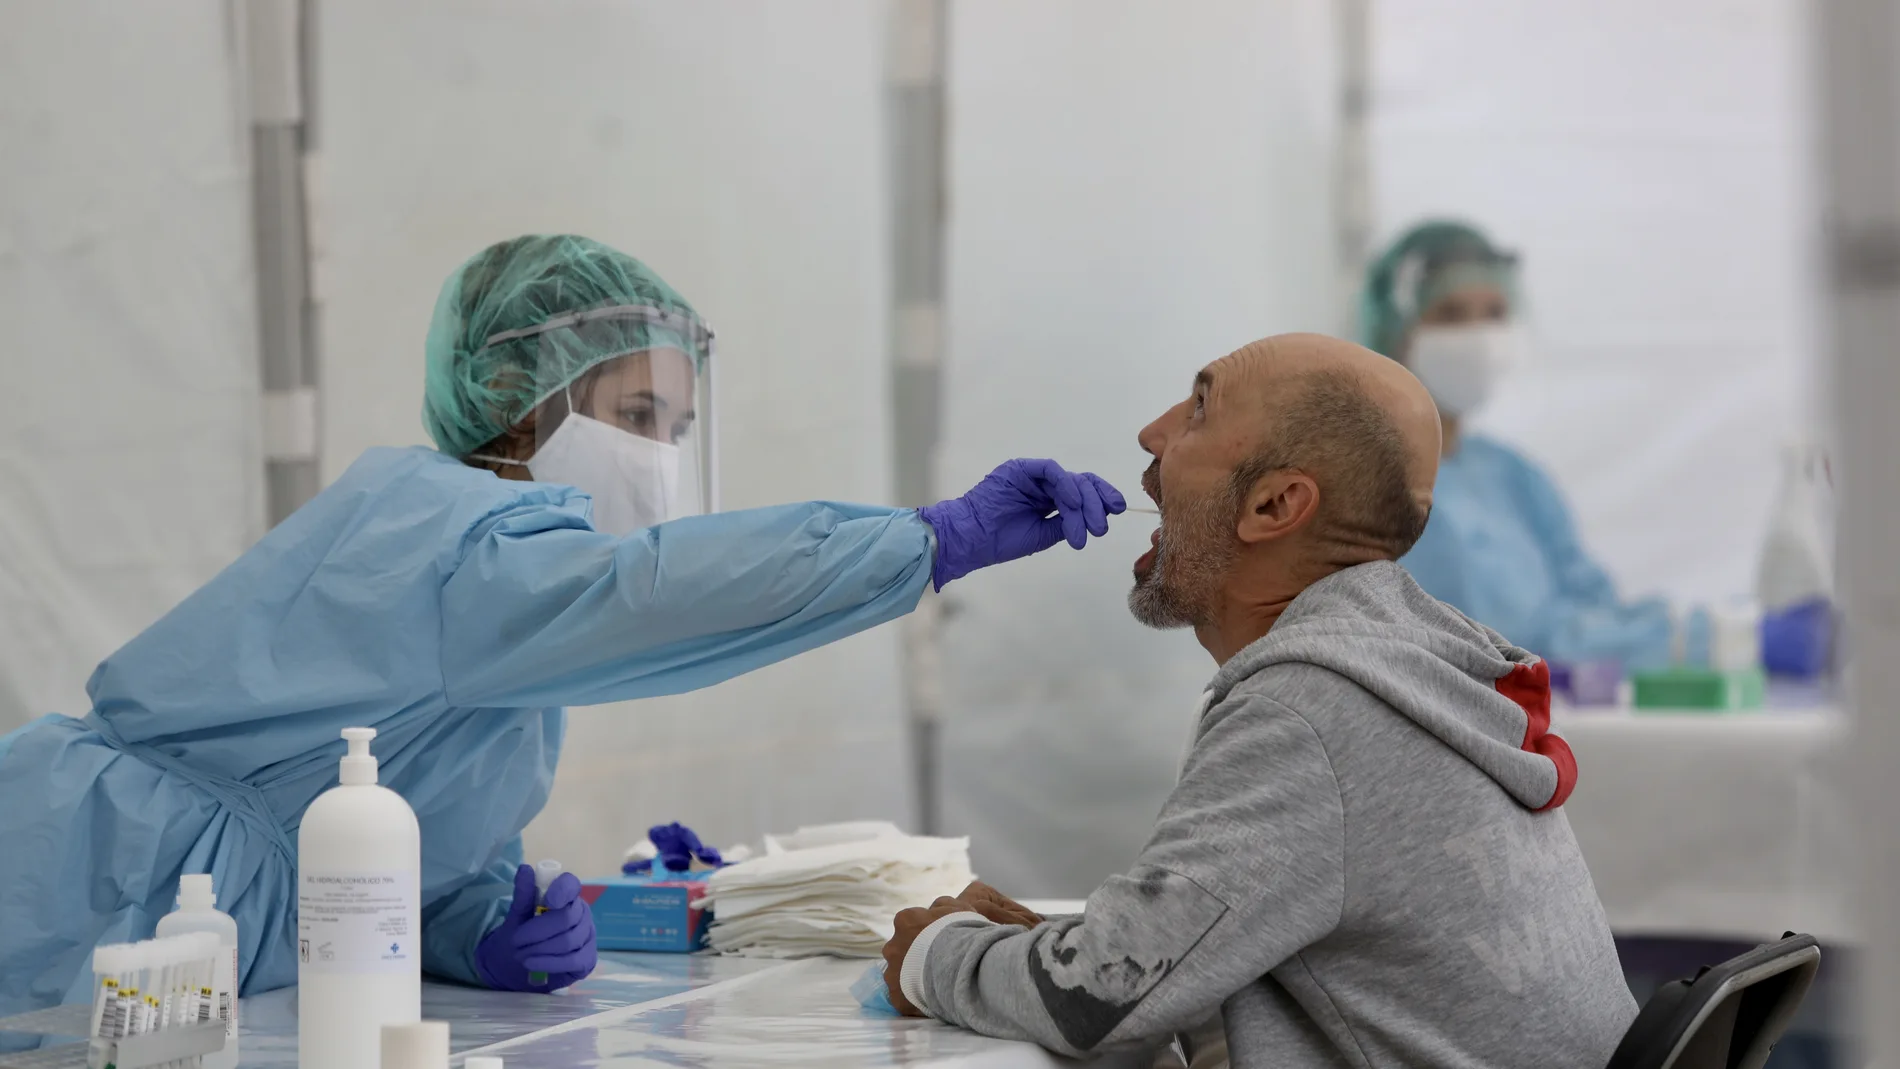 Una sanitaria le realiza un frotis bucal a un paciente para realizar el test que detecta la Covid-19